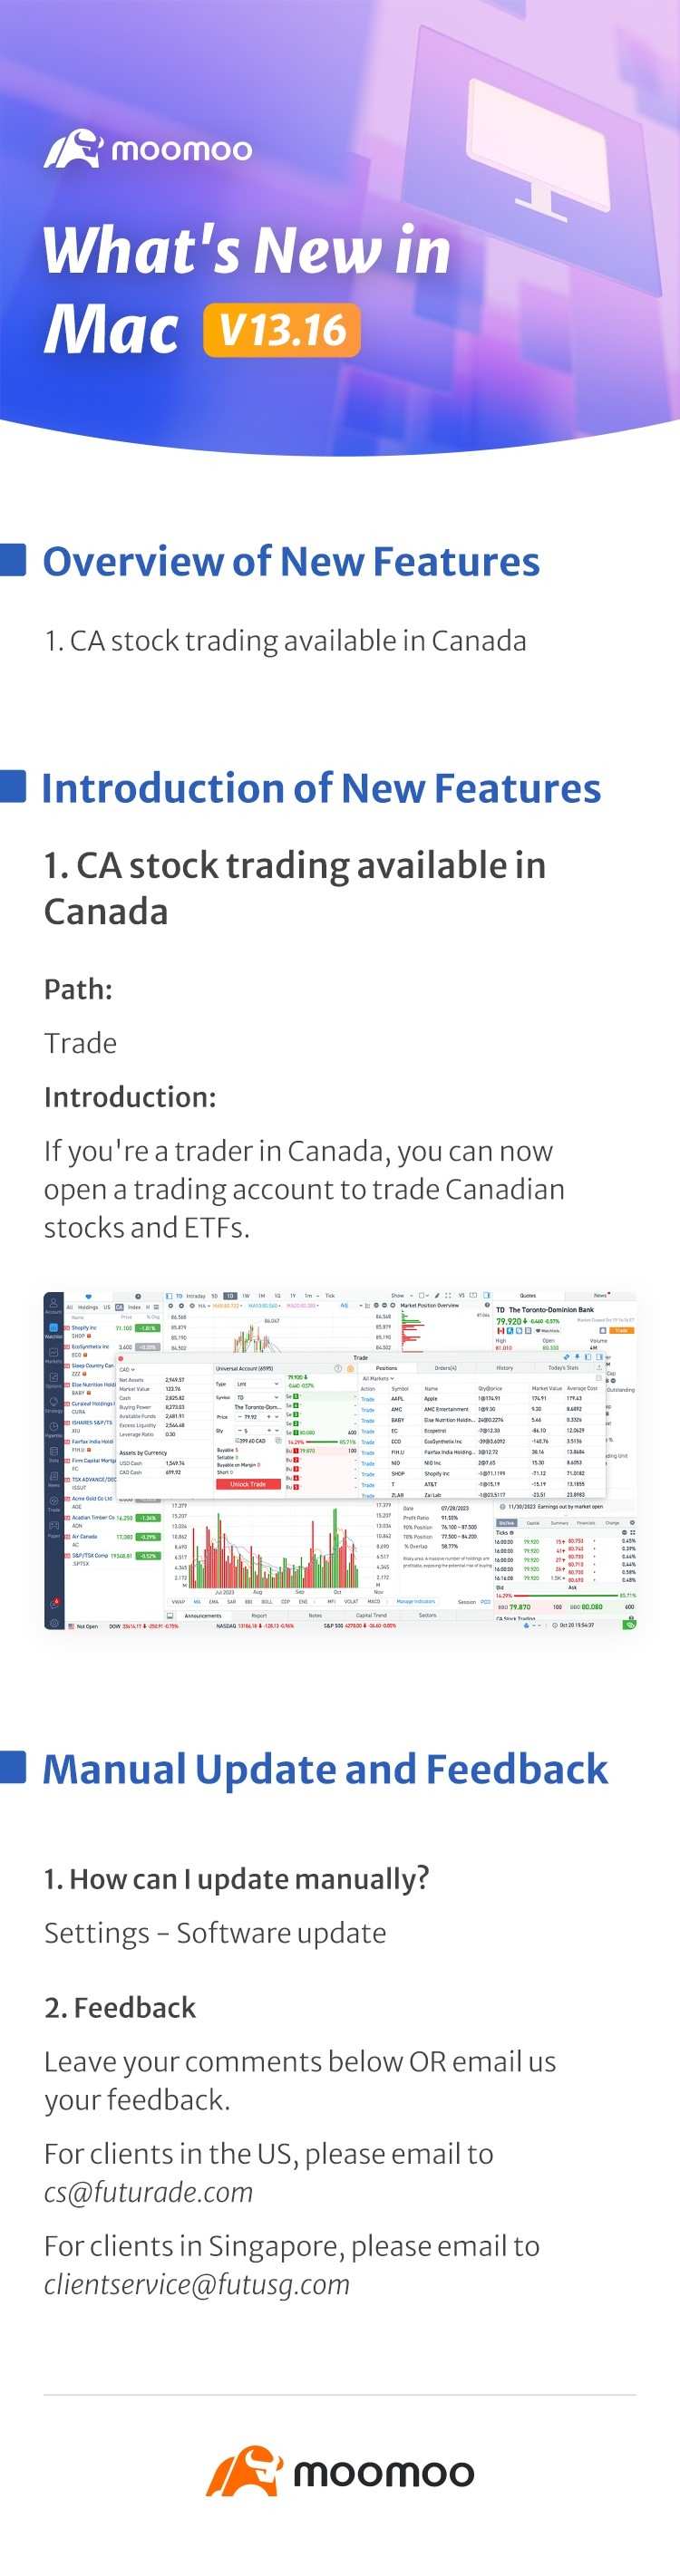 最新消息：加拿大在 Mac v13.16 中可以交易加州股票